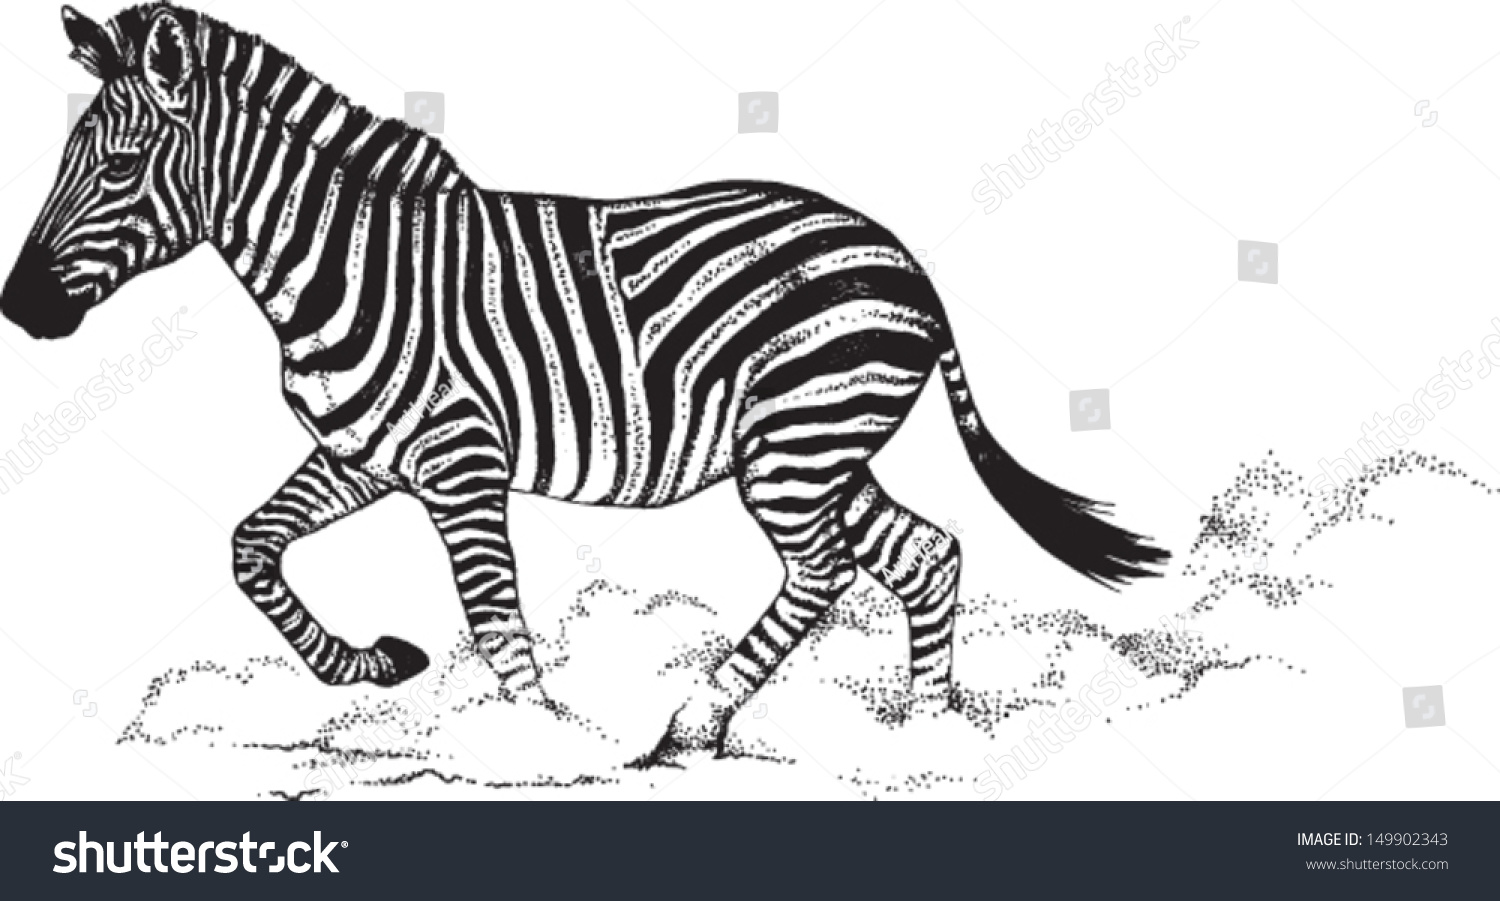 zebra running clipart - photo #40